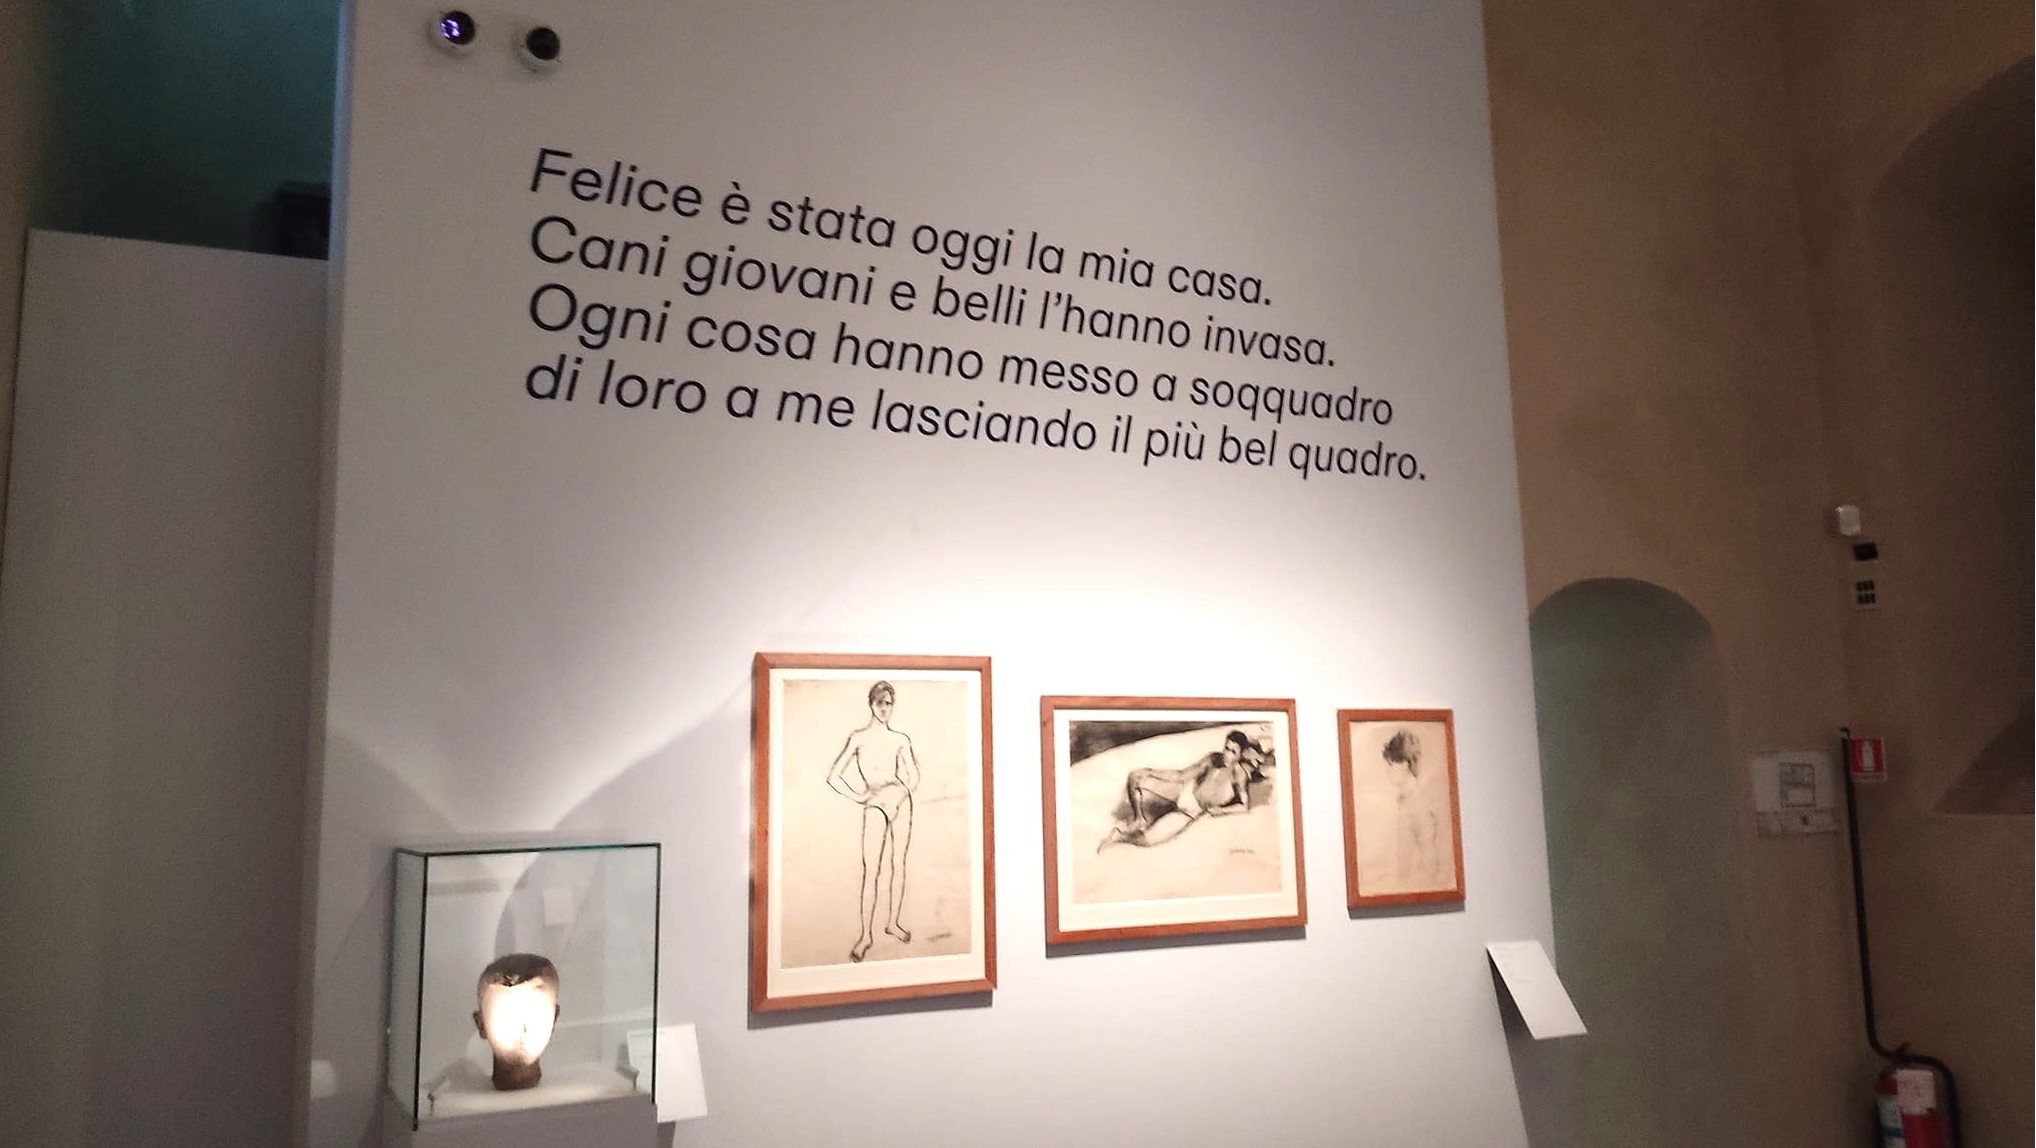 Uno scorcio della mostra sui quadri che hano avuto a che fare con Sandro Penna, presso la Galleria Nazionale delll'Umbria